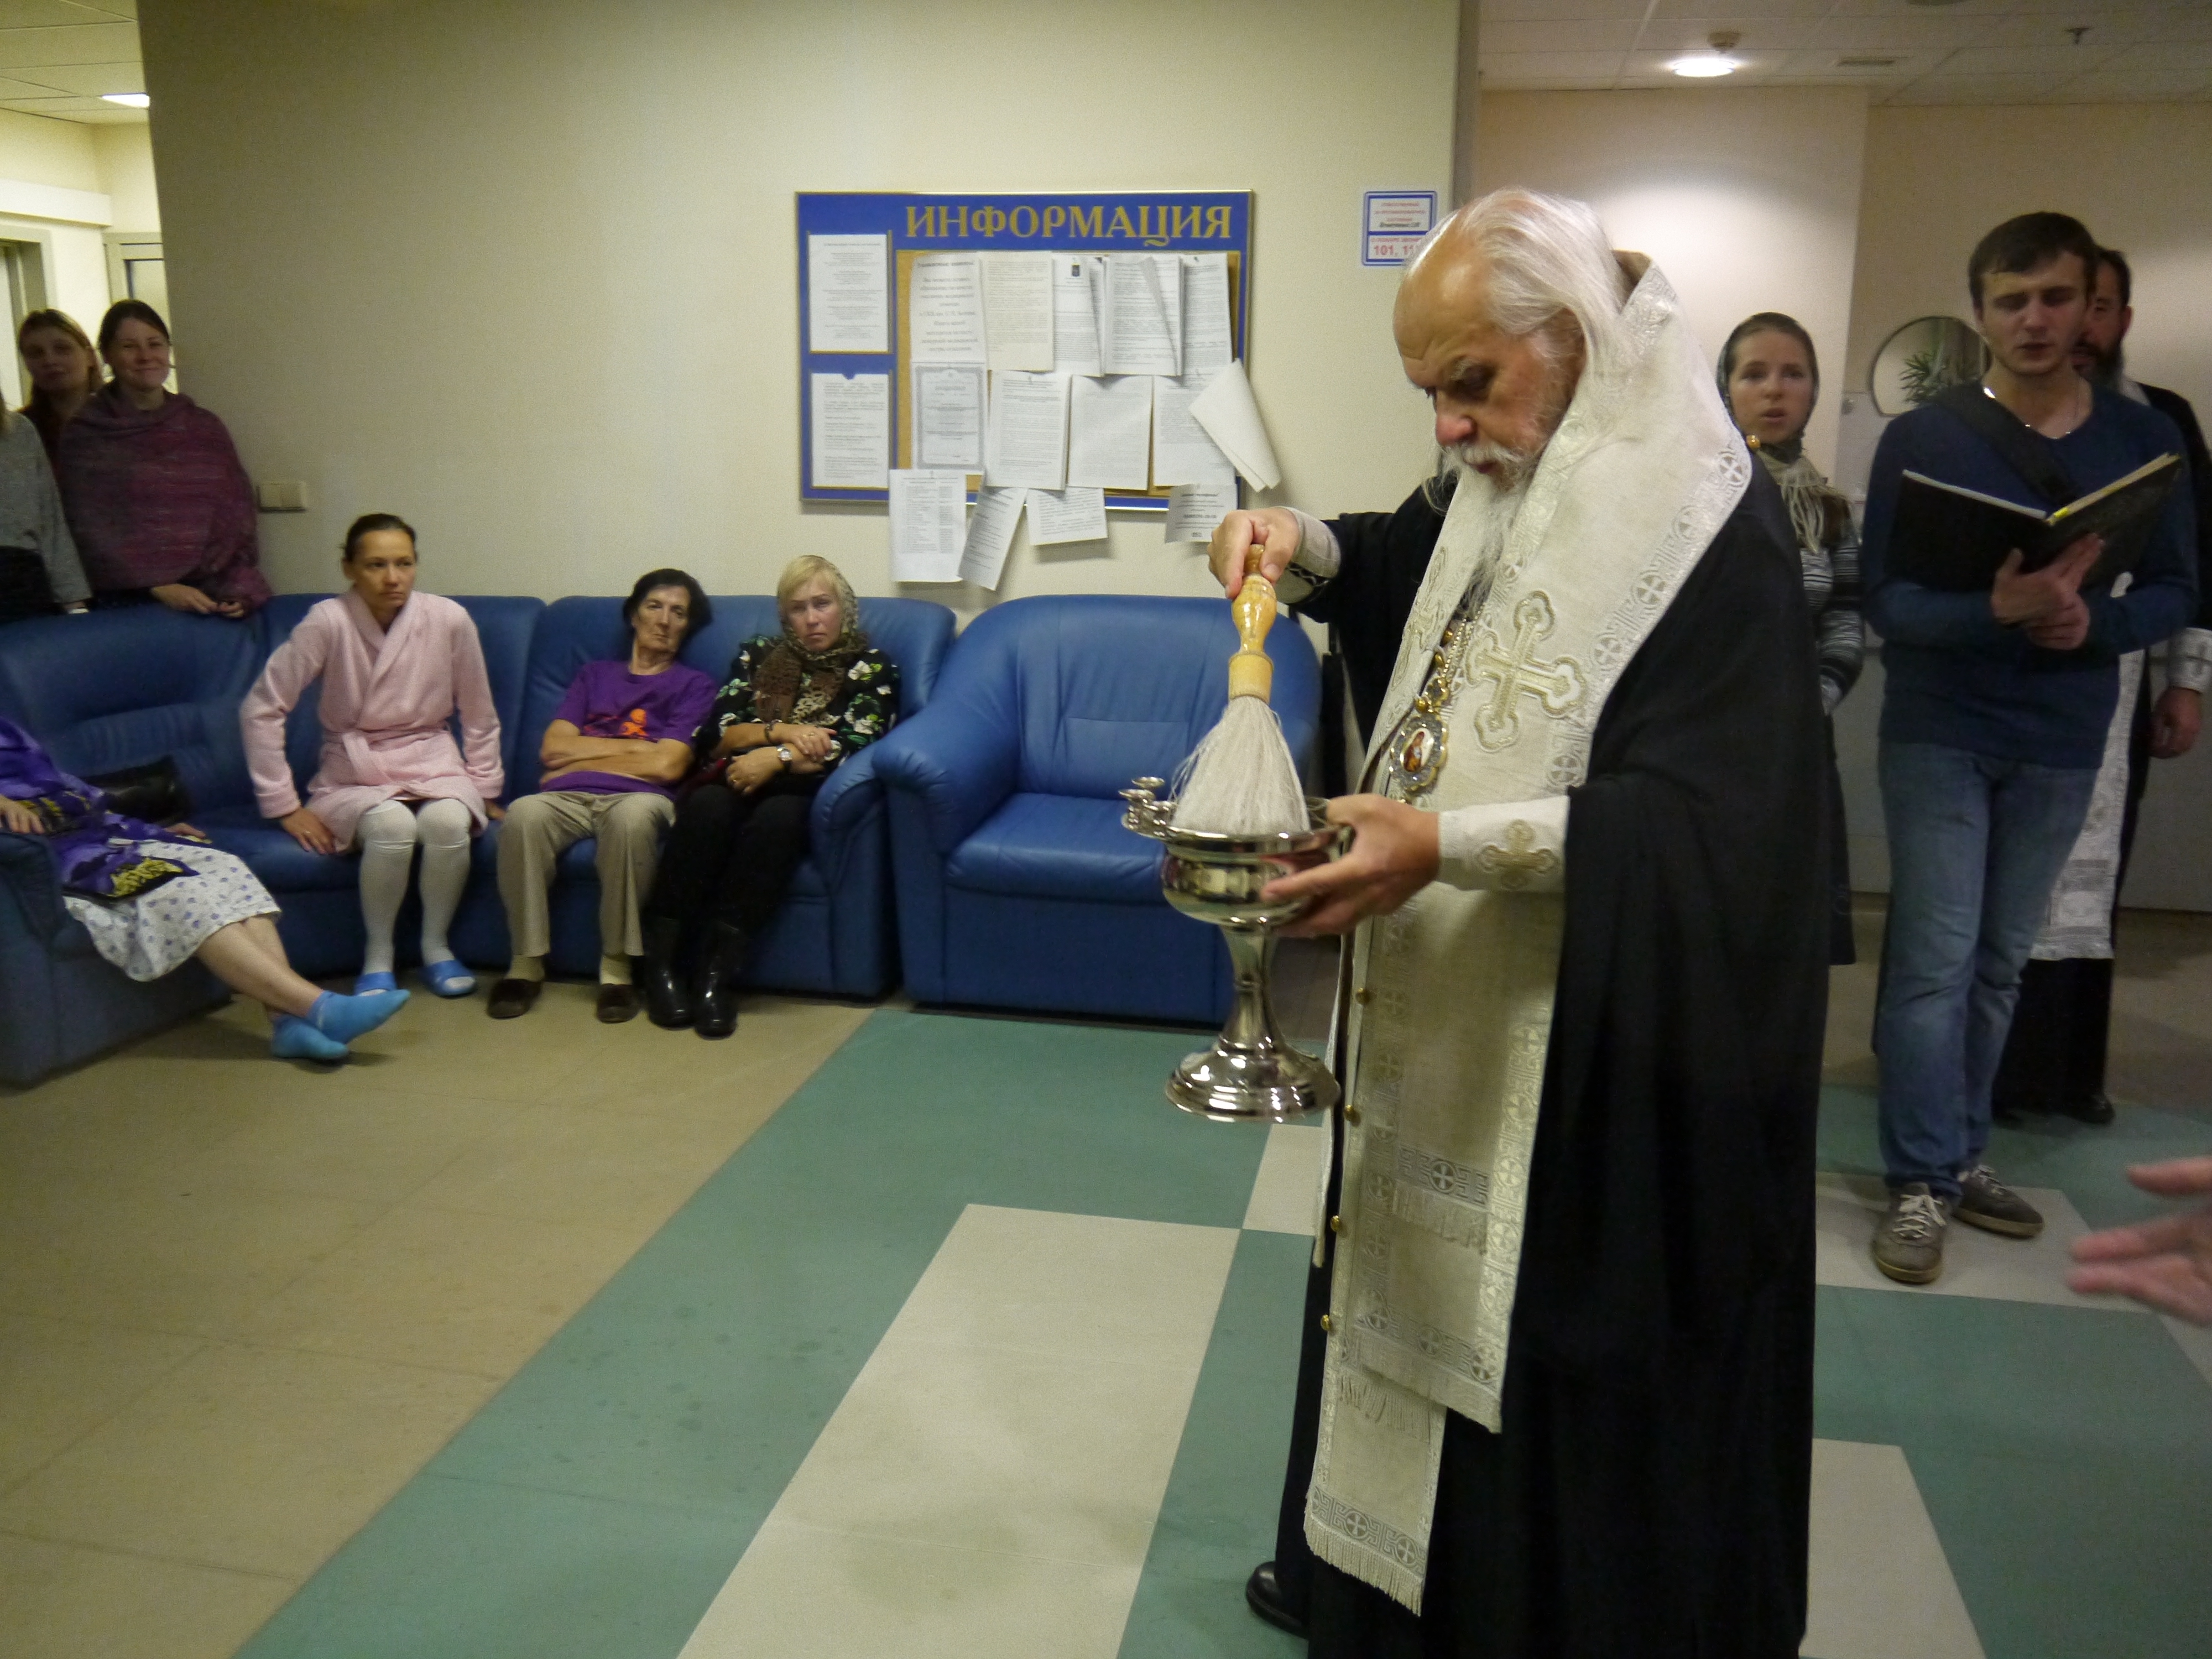 Епископ Орехово-Зуевский Пантелеимон совершил молебен в холле отделения неврологии Боткинской больницы